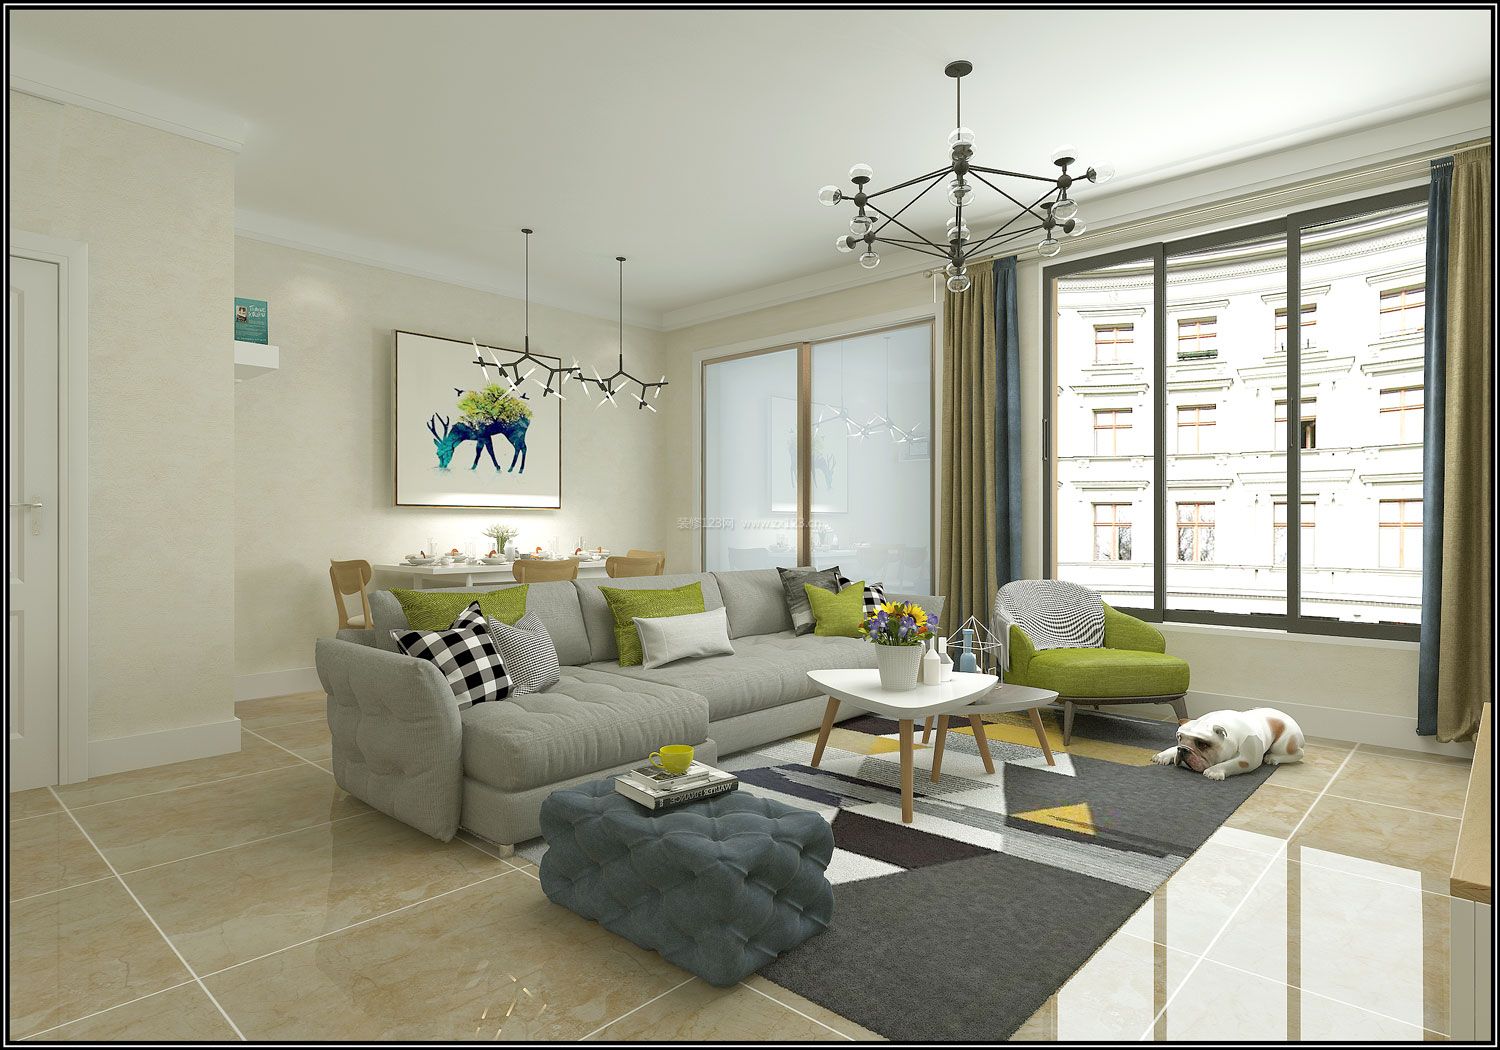 2020淡雅现代简约客厅效果图 2020灰色沙发效果图